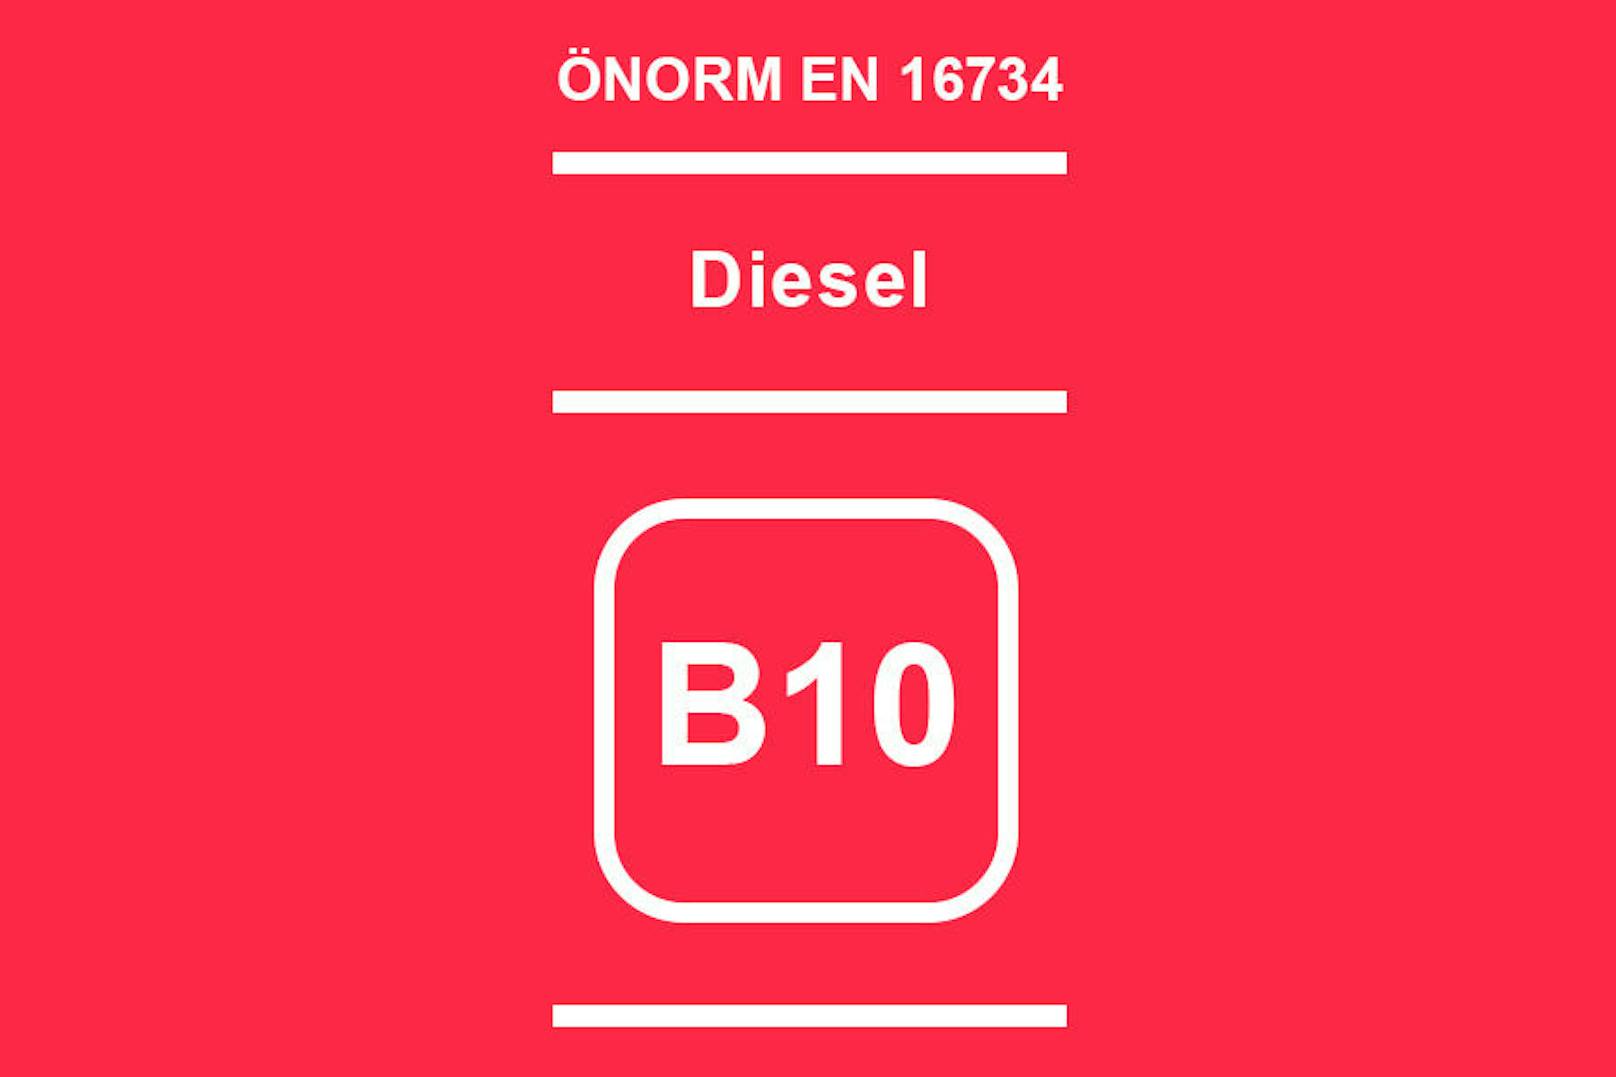 <b>B10: Diesel </b>mit einem Biokraftstoff-Anteil von bis zu 10 Prozent. Zusatzhinweis: Enthält metallische Zusätze. Achtung! Nur für Fahrzeuge mit Herstellerfreigabe.